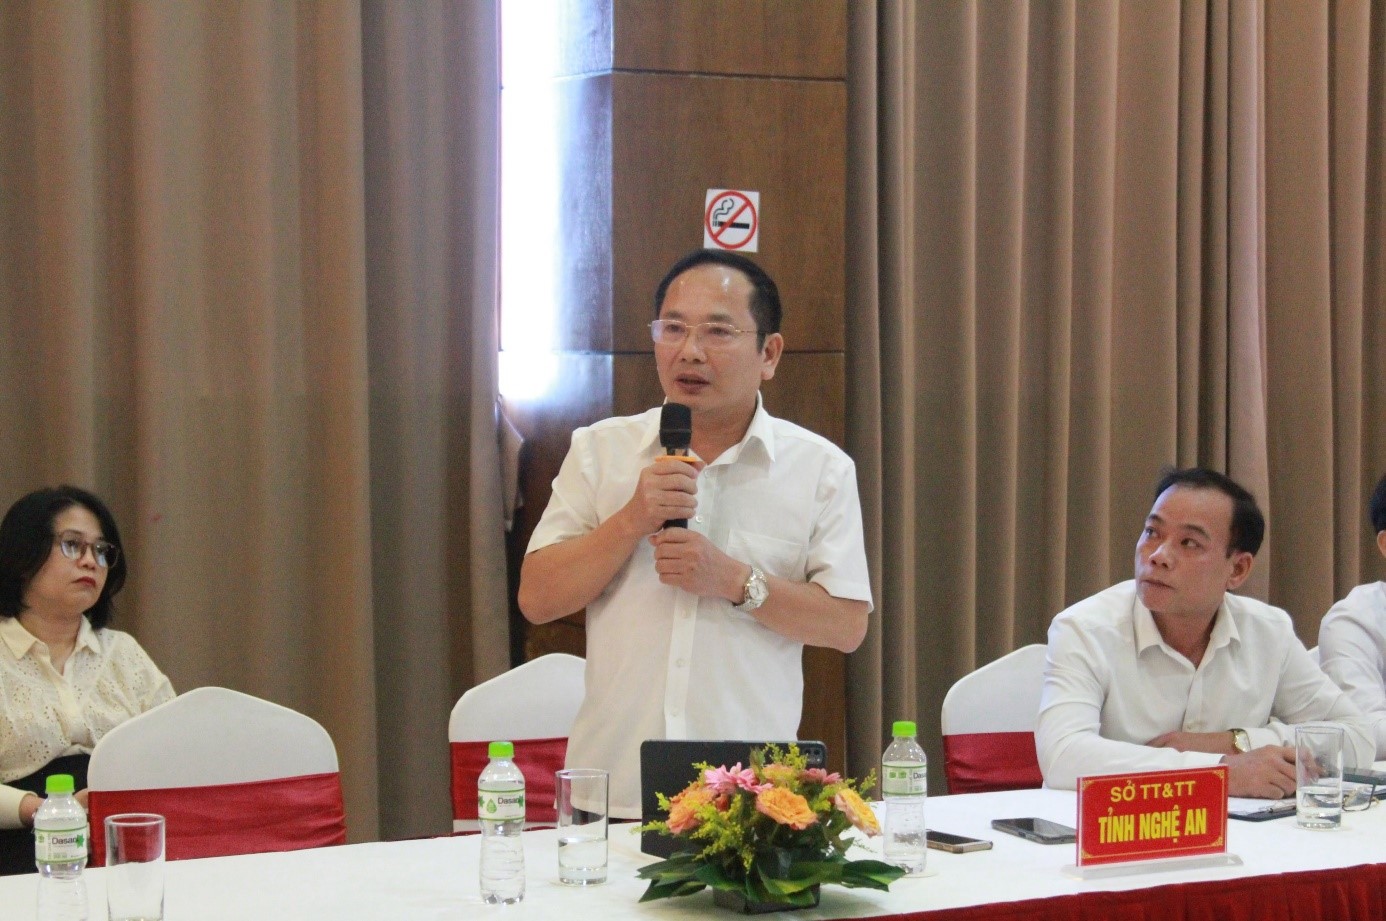 Đồng chí Võ Trọng Phú – Phó Giám đốc Sở Thông tin và Truyền thông Nghệ An phát biểu tại Hội nghị